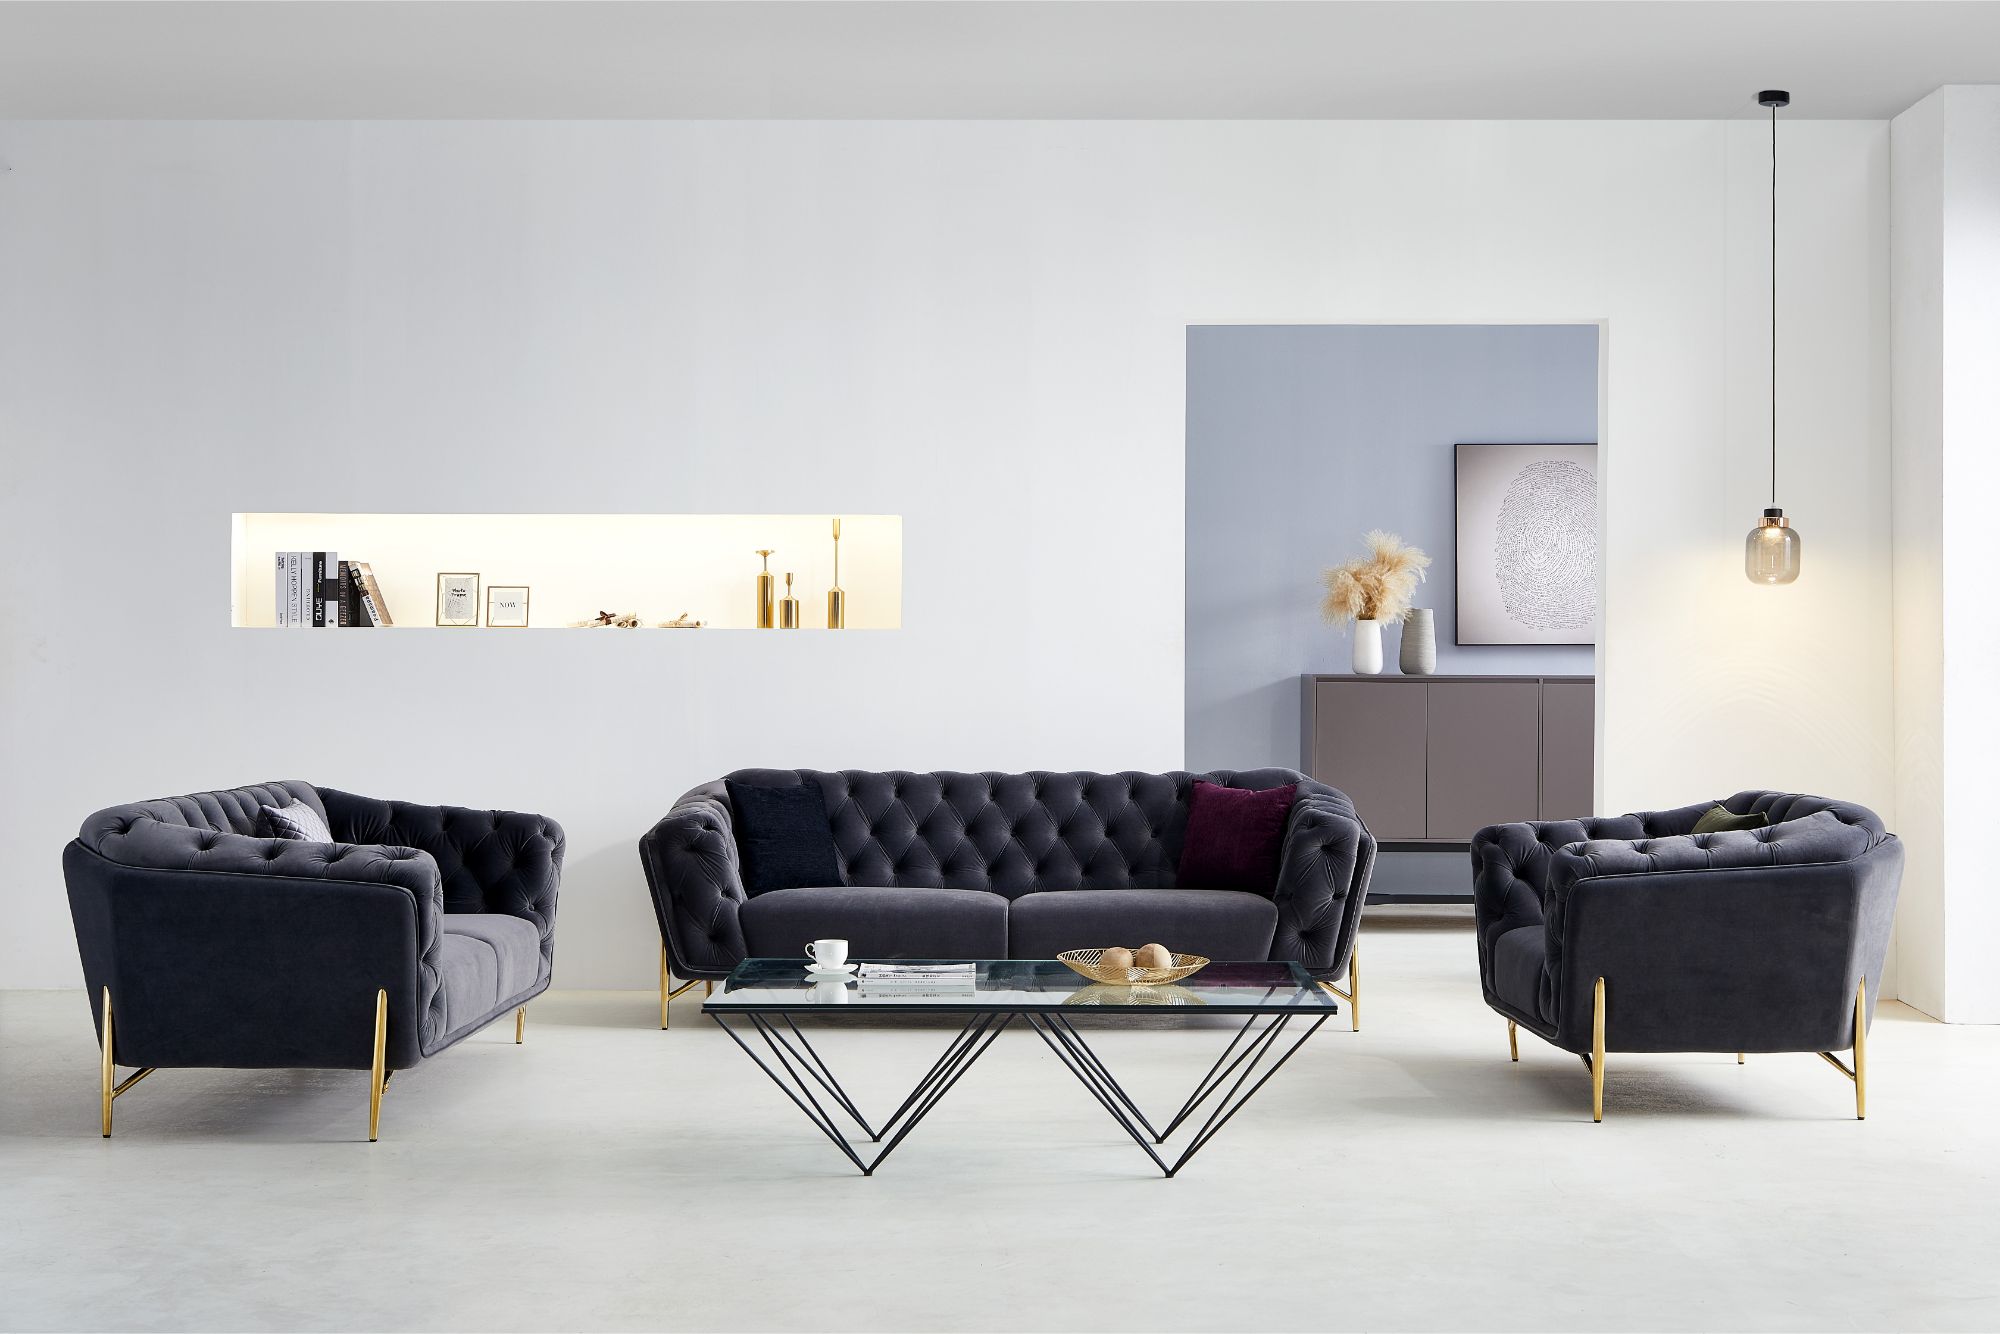 Isabella design soffa med Kingston soffbord - Soffa sammet mörkgrå